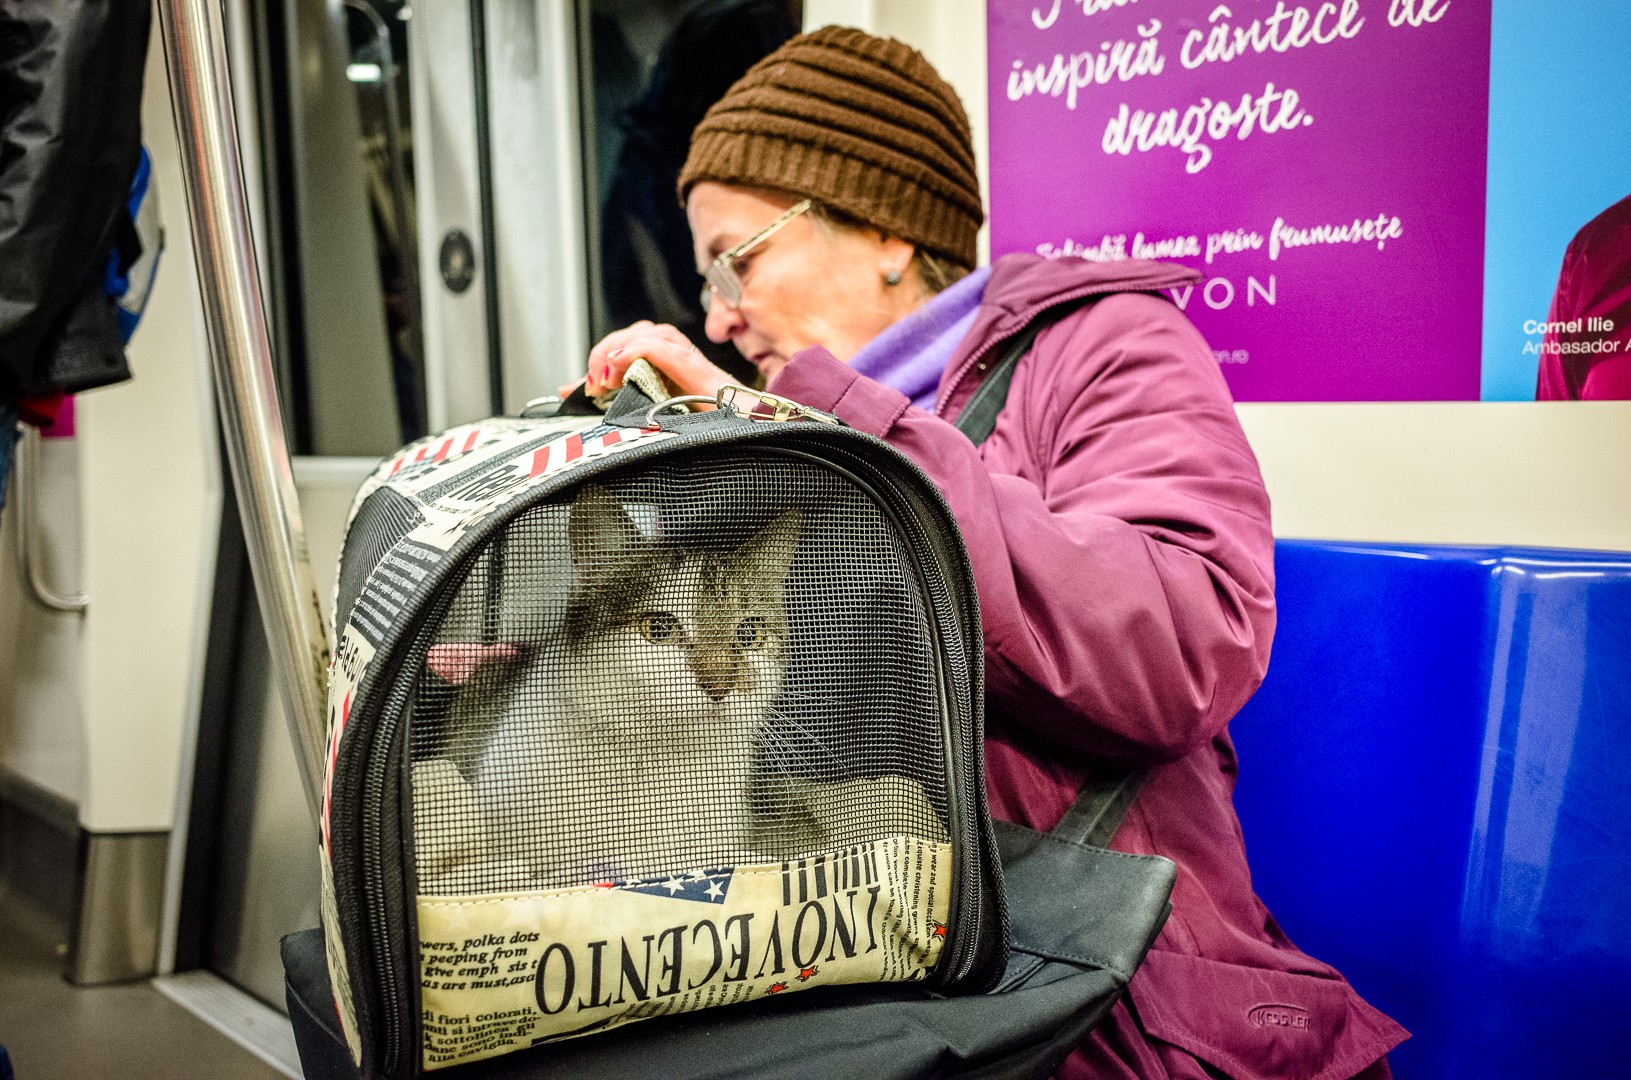 Pisica din metrou - Seara Colectiv